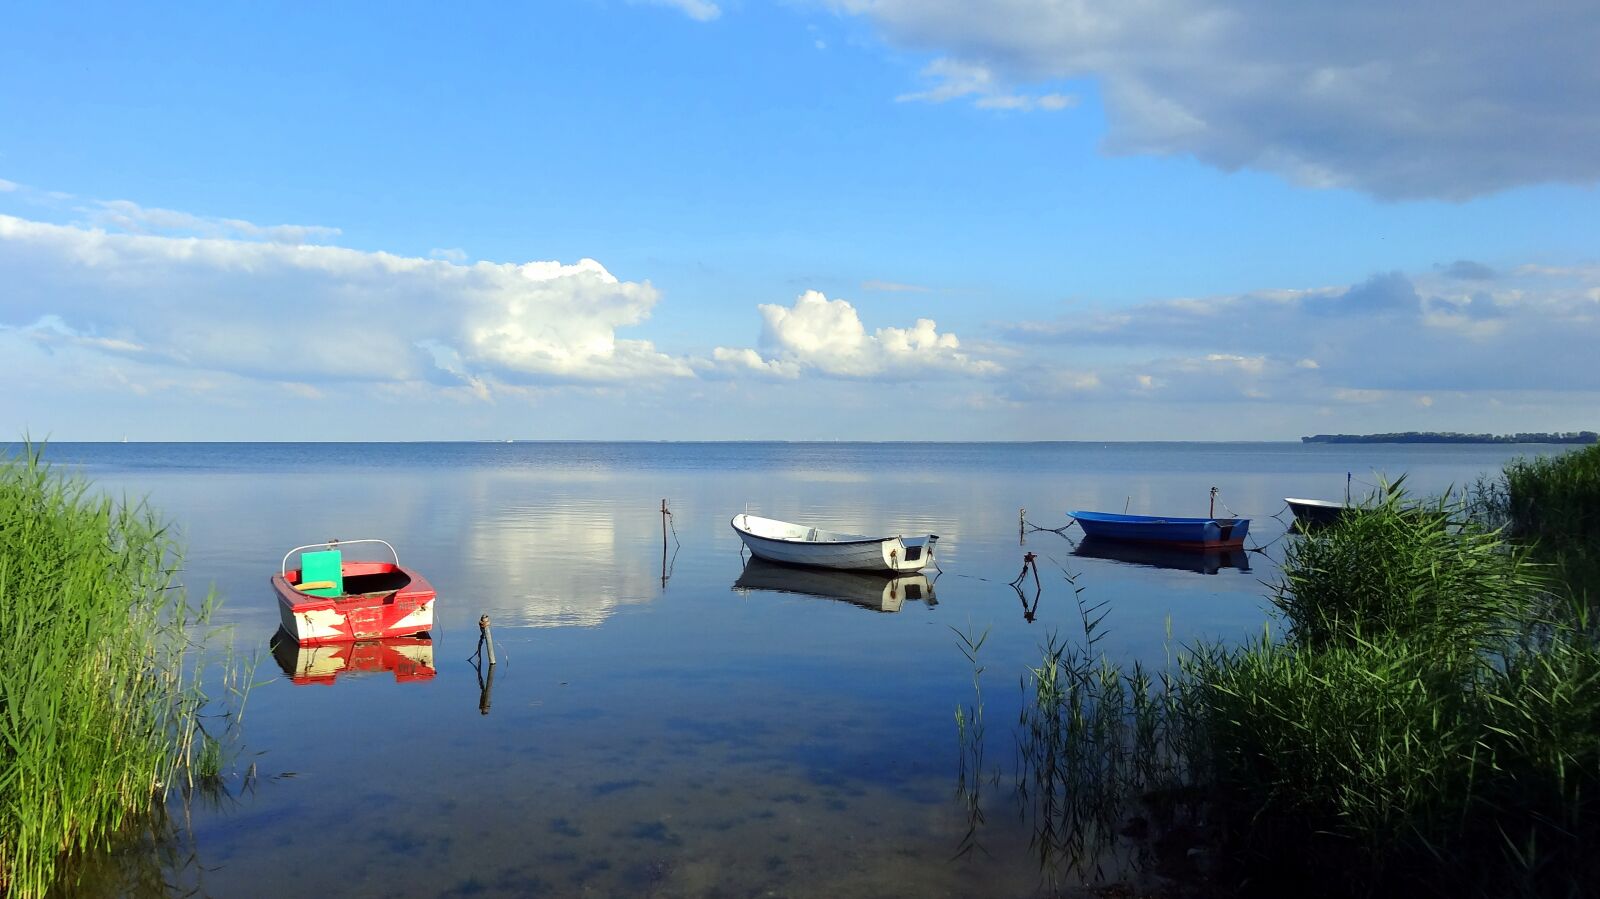 Sony Cyber-shot DSC-HX20V sample photo. Lake, boats, sky photography